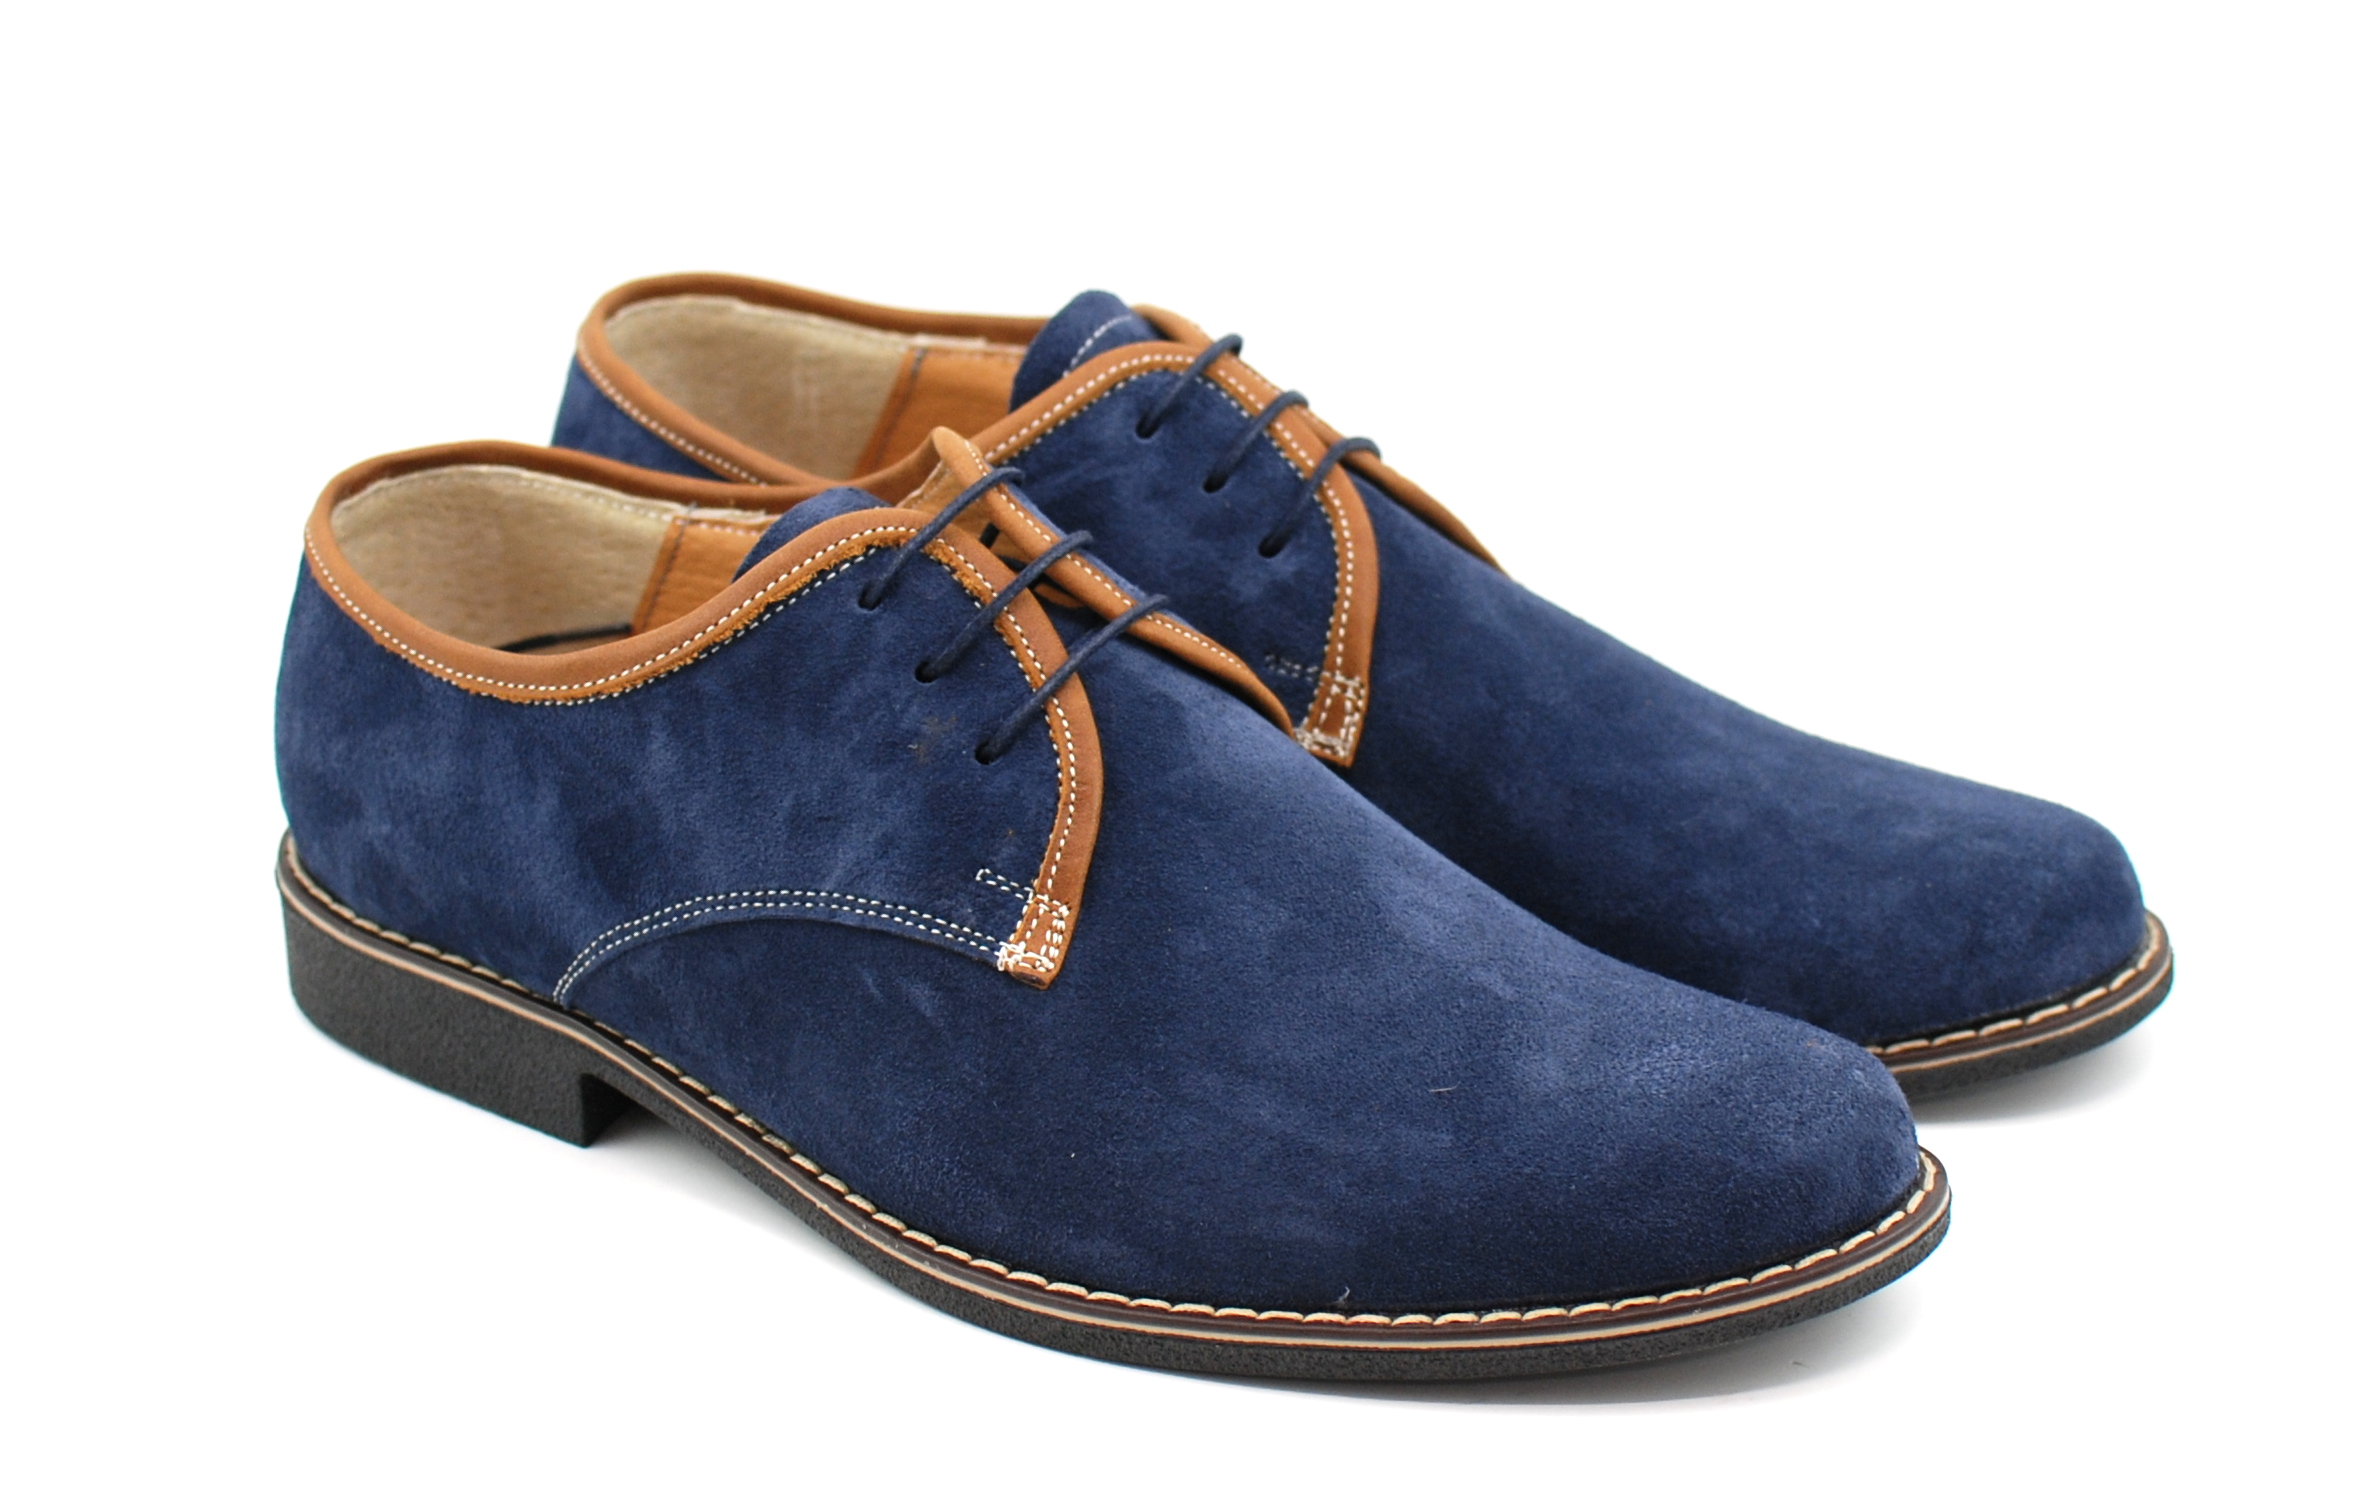 Oferta marimea 42, pantofi barbati casual, din piele naturala, culoare bleumarin LP34BLUE